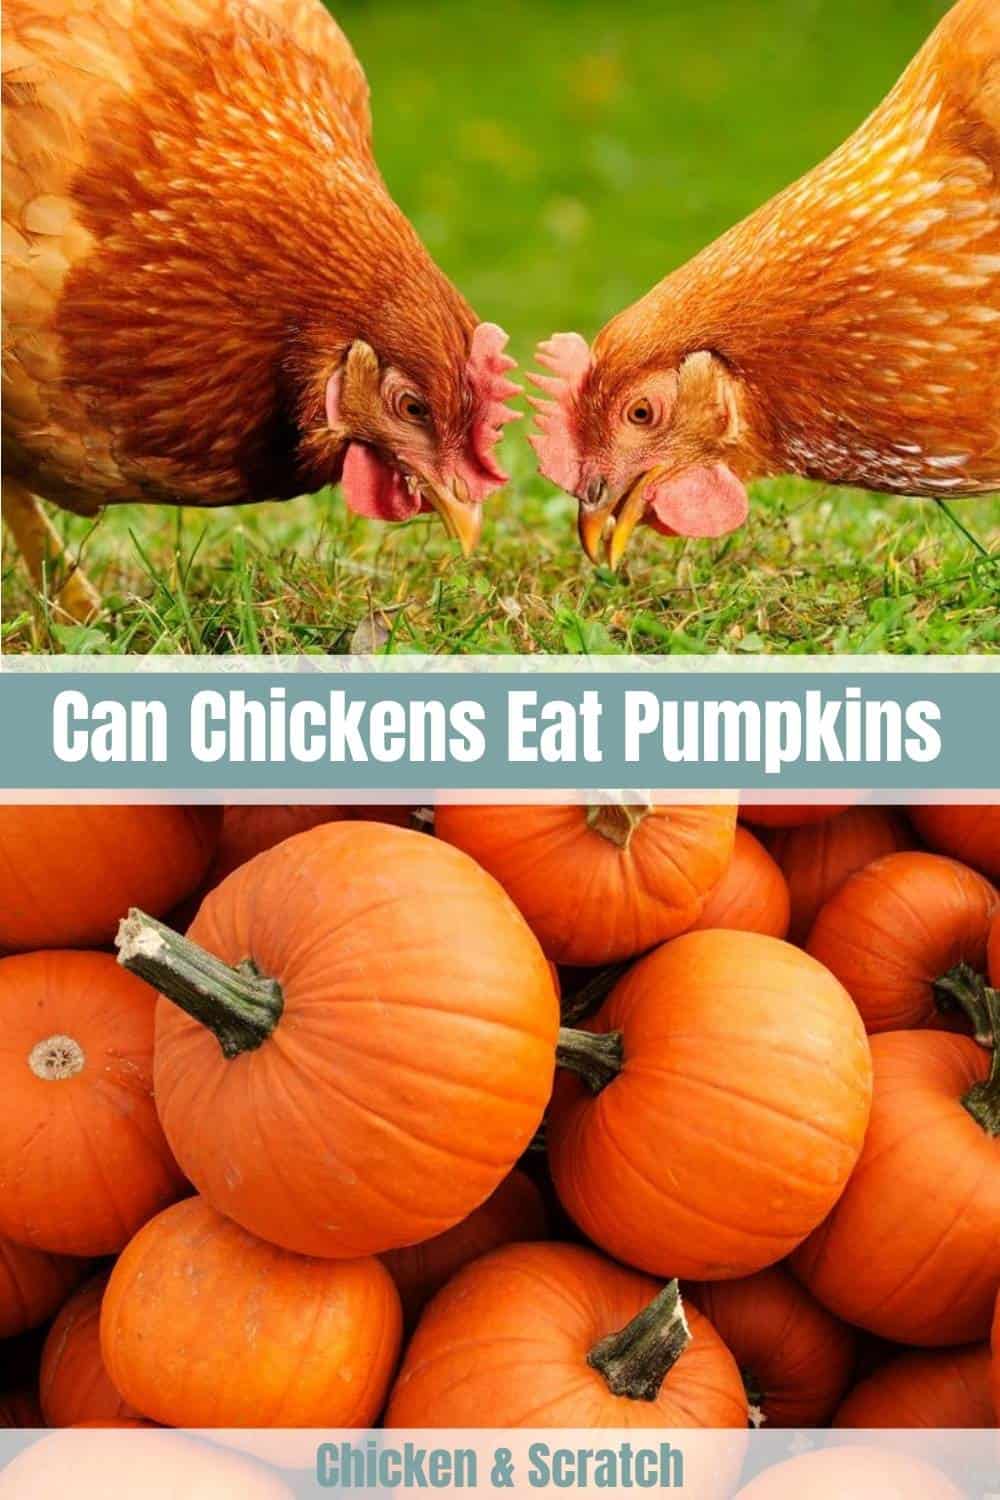 can chickens eat pumpkin seeds